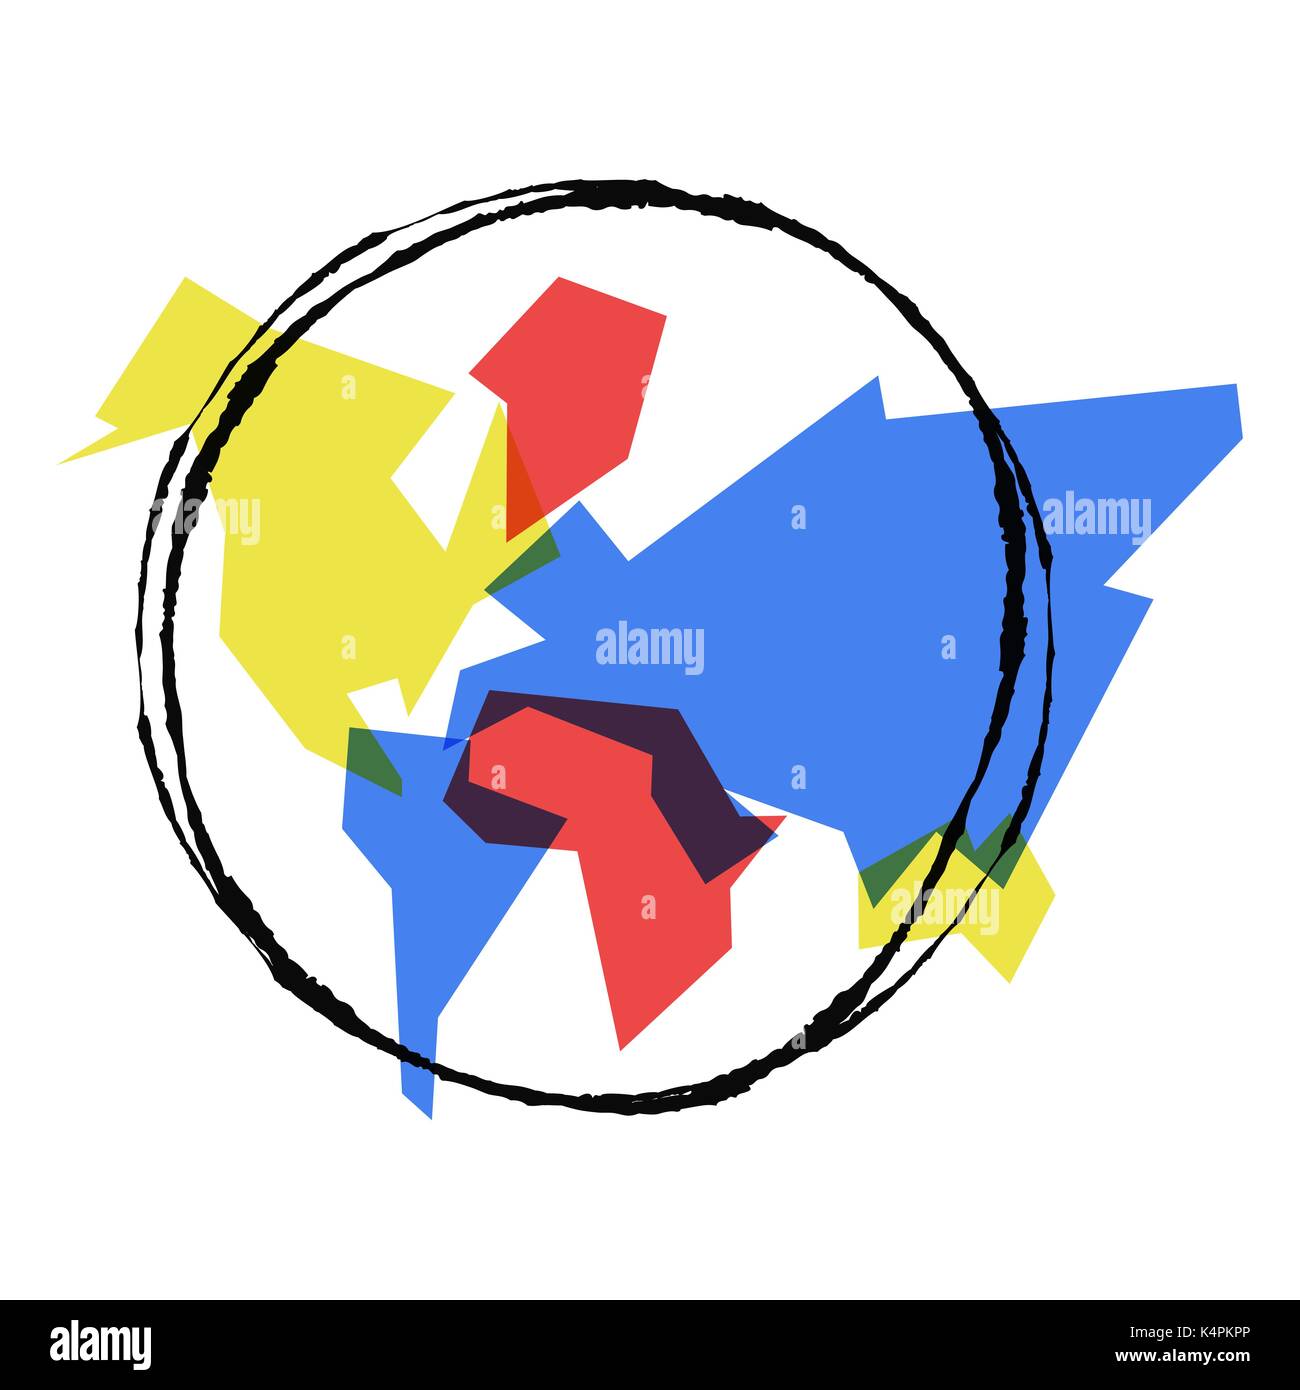 Abstrakte Welt Karte einfache Konzept Abbildung, bunte geometrische Kontinent Formen mit Hand gezeichnet Planet Erde skizzieren. EPS 10 Vektor. Stock Vektor